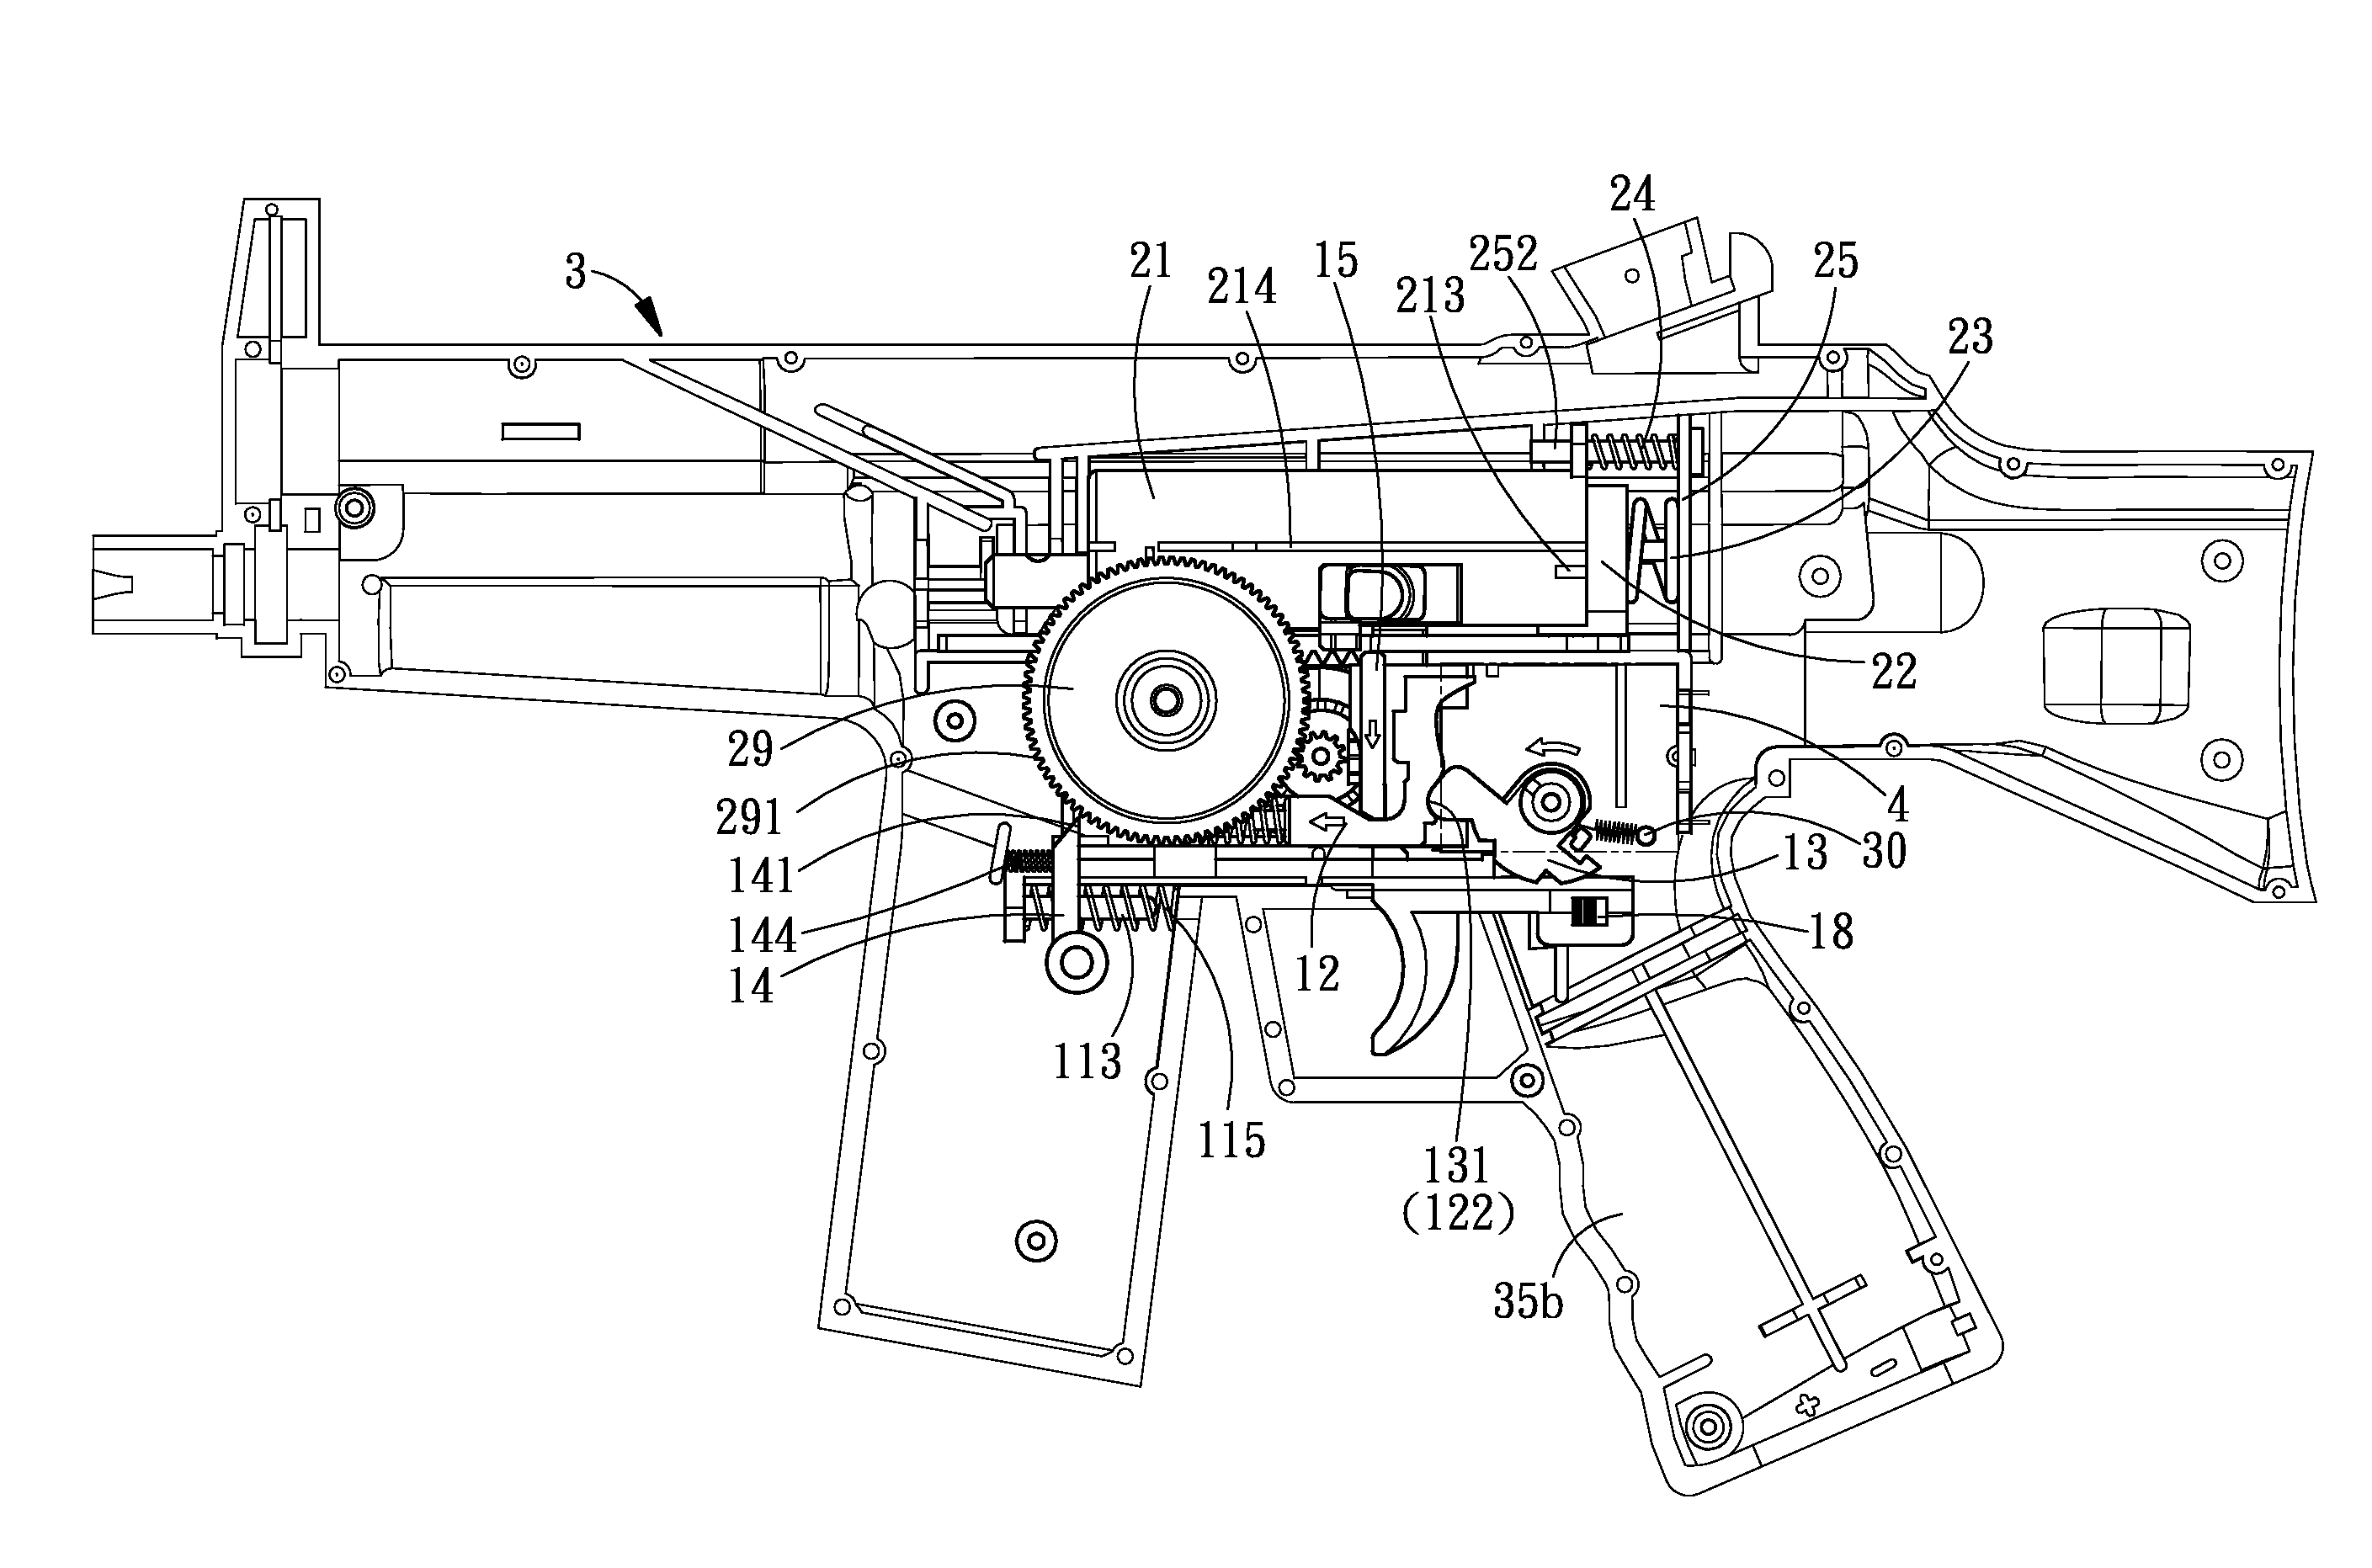 Duplex control structure of toy gun